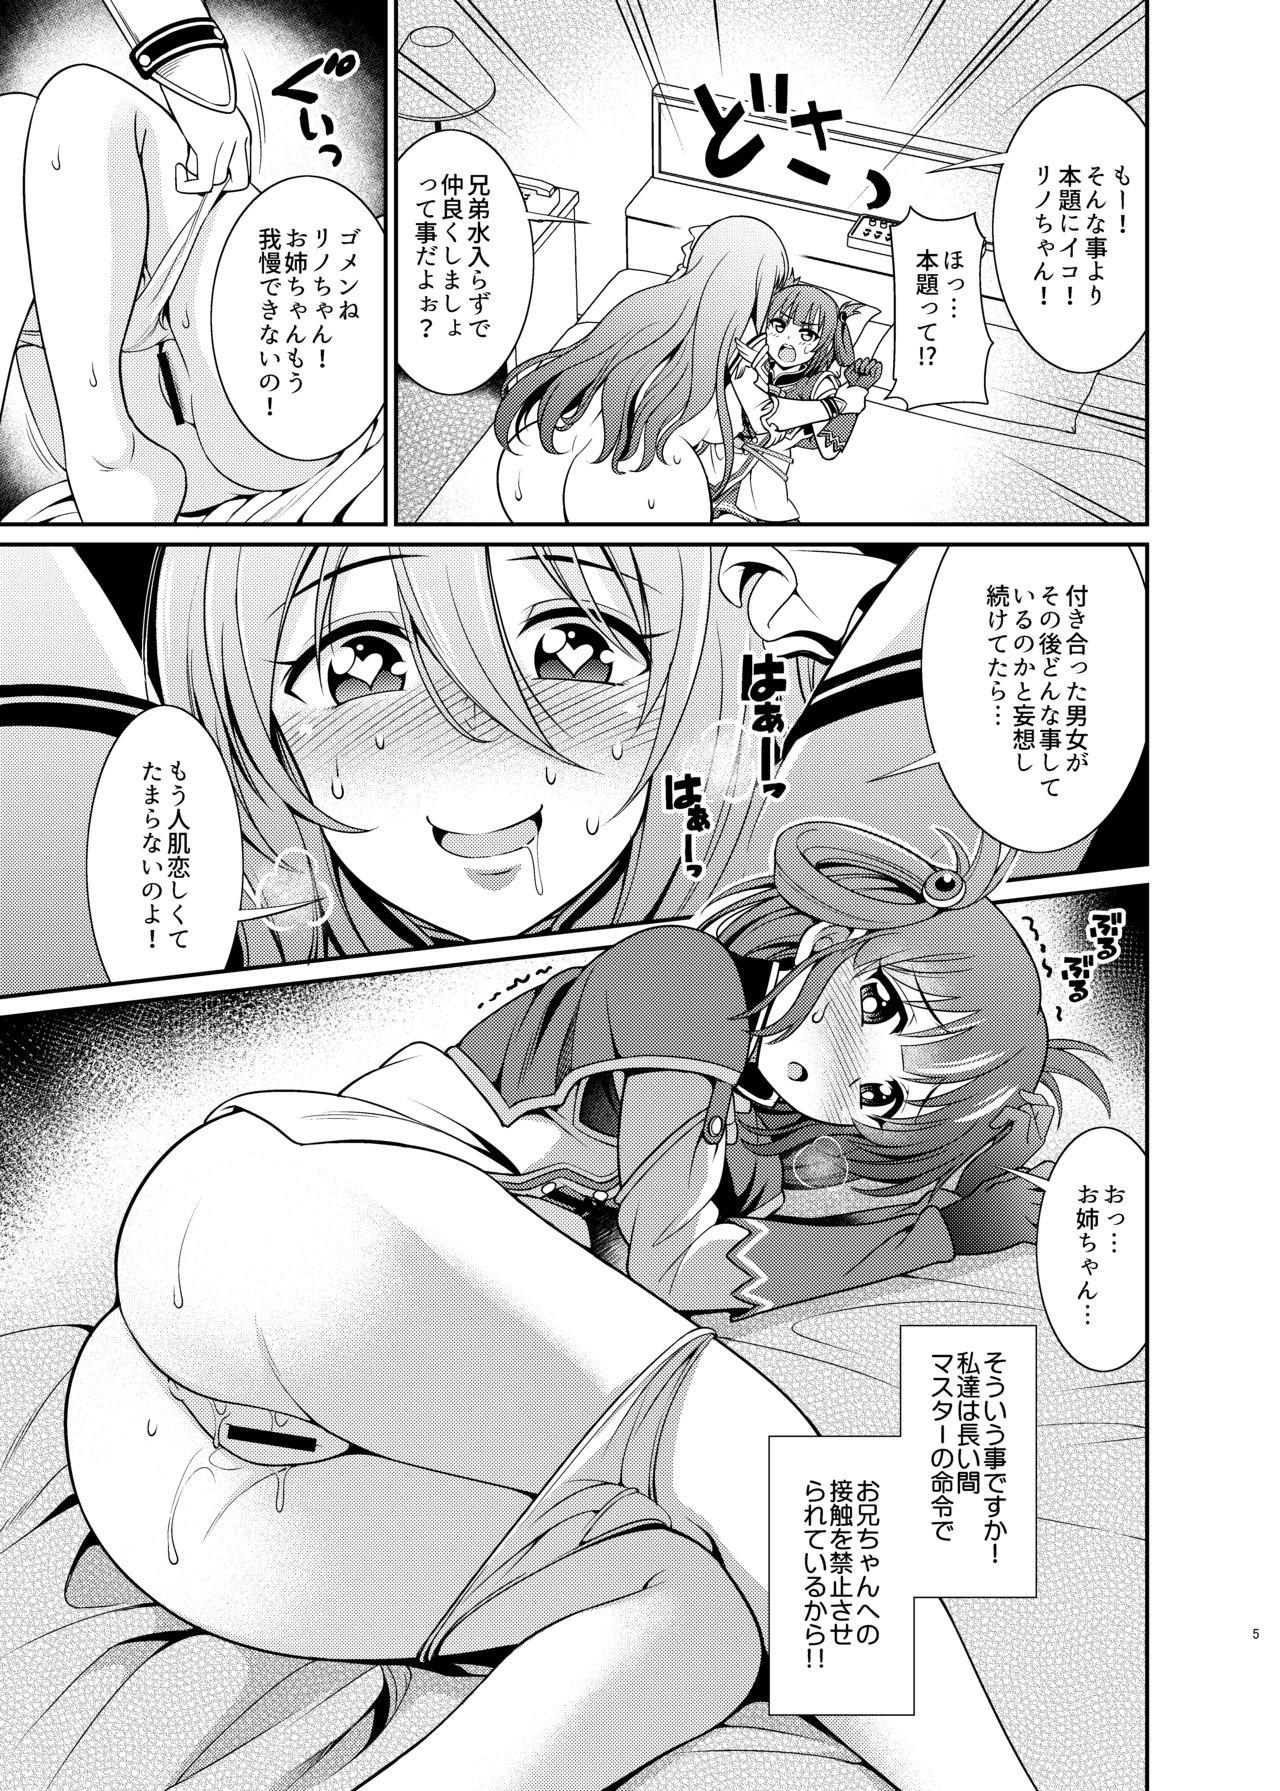 Bigass Kinyoku Seikatsu nante Kiwameru kara... Ochinchin ga Haechaun desu yo! - Princess connect Rimming - Page 5